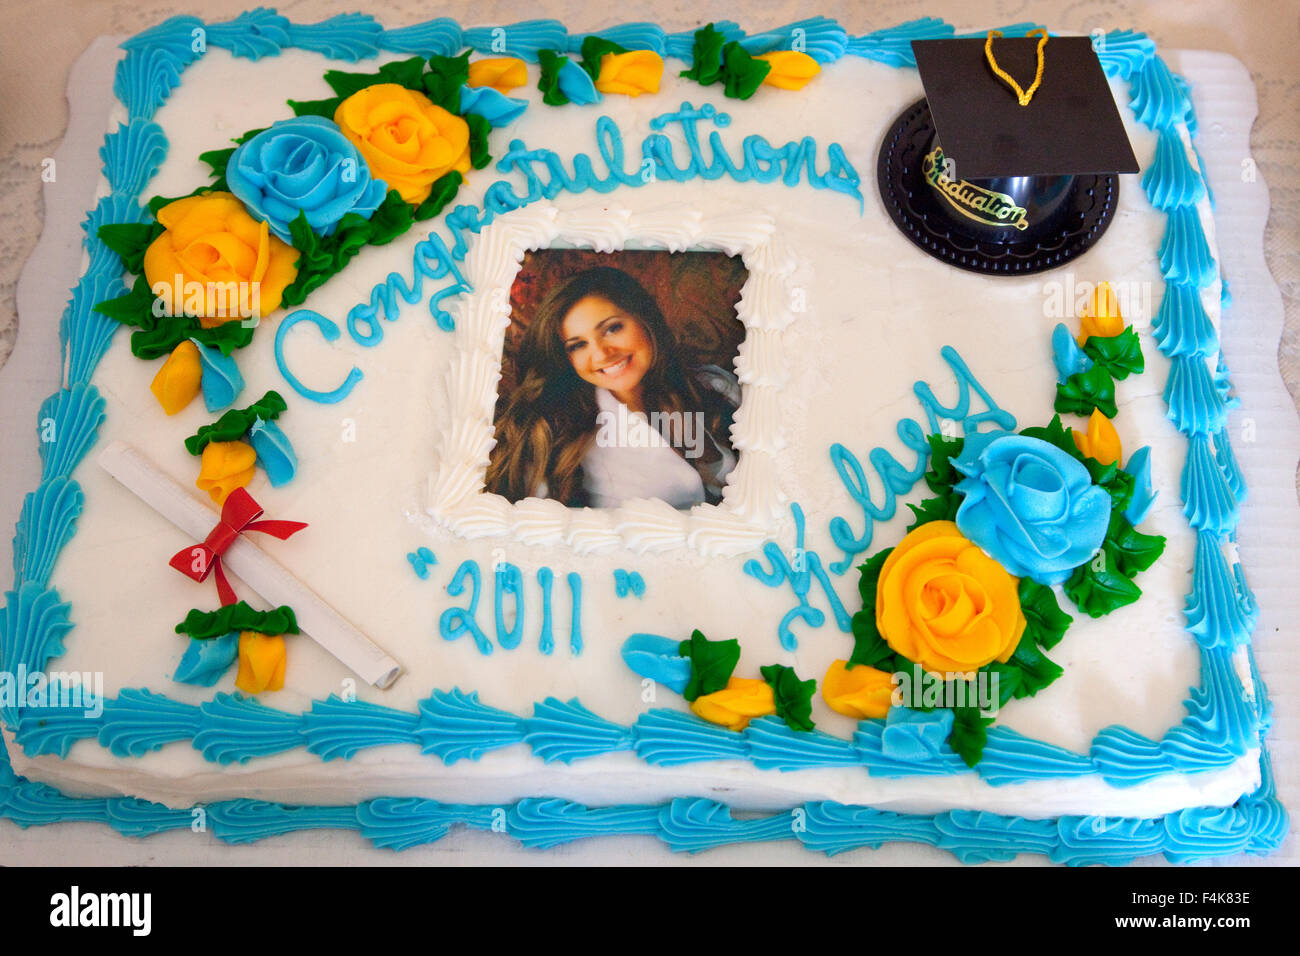 Gâteau décoré avec l'obtention du diplôme d'études collégiales, cap avec pompon et de fleurs. Mahtomedi Minnesota MN USA Banque D'Images